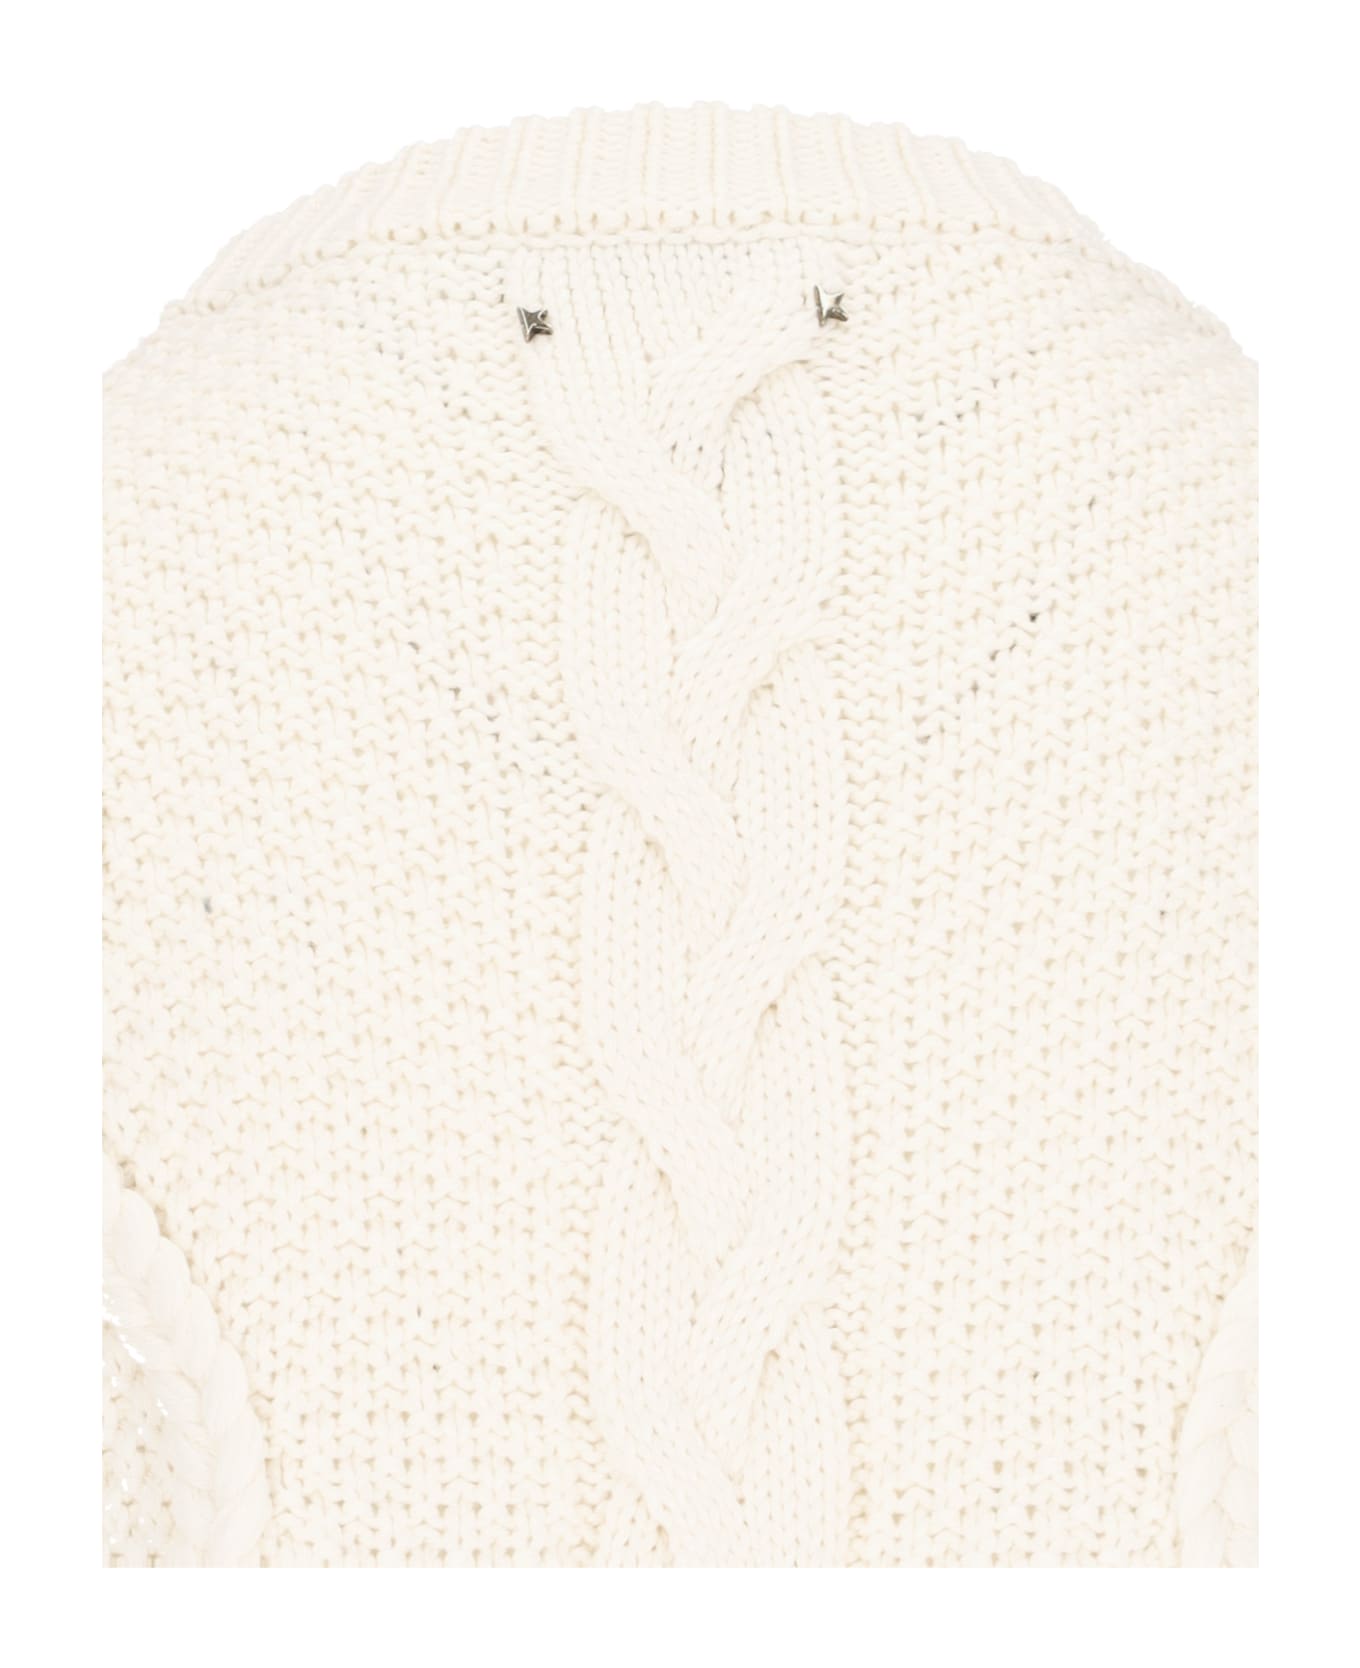 Golden Goose Crewneck Sweater - White ニットウェア